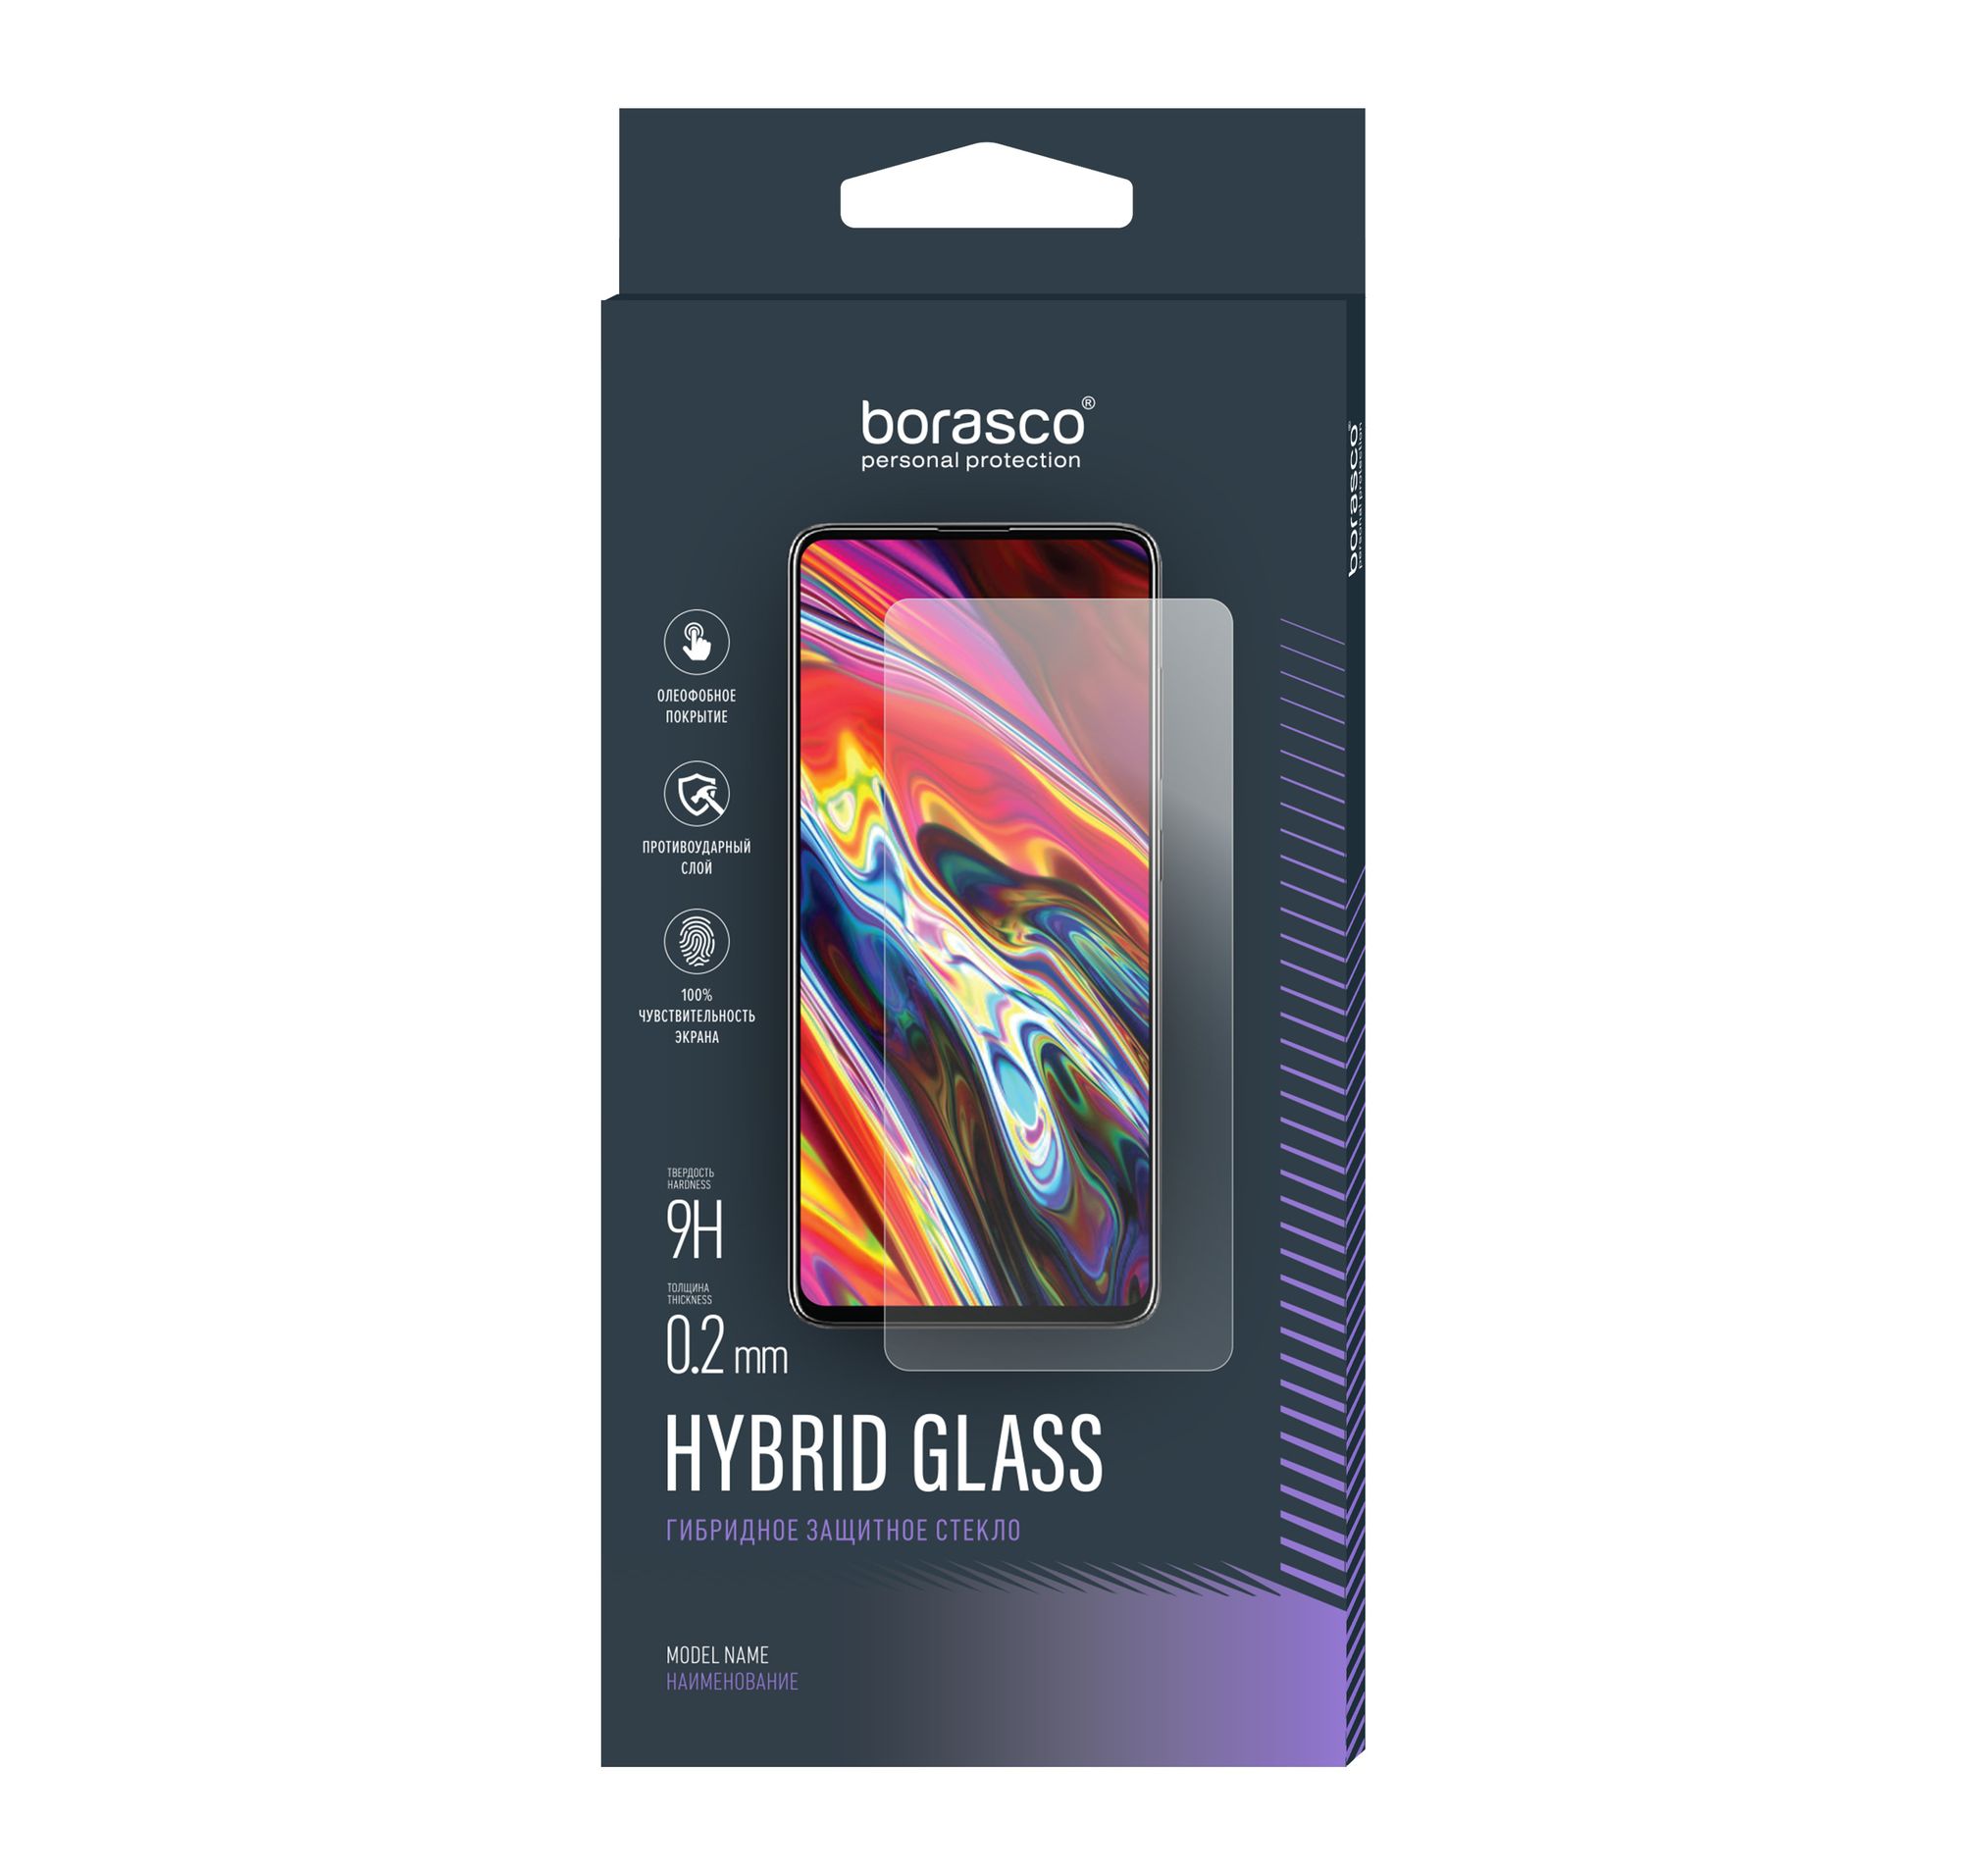 Стекло защитное Hybrid Glass VSP 0,26 мм для Samsung Galaxy A7 2017 cиликоновый чехол buyoo для samsung galaxy a7 2017 прозрачный самсунг галакси а7 2017